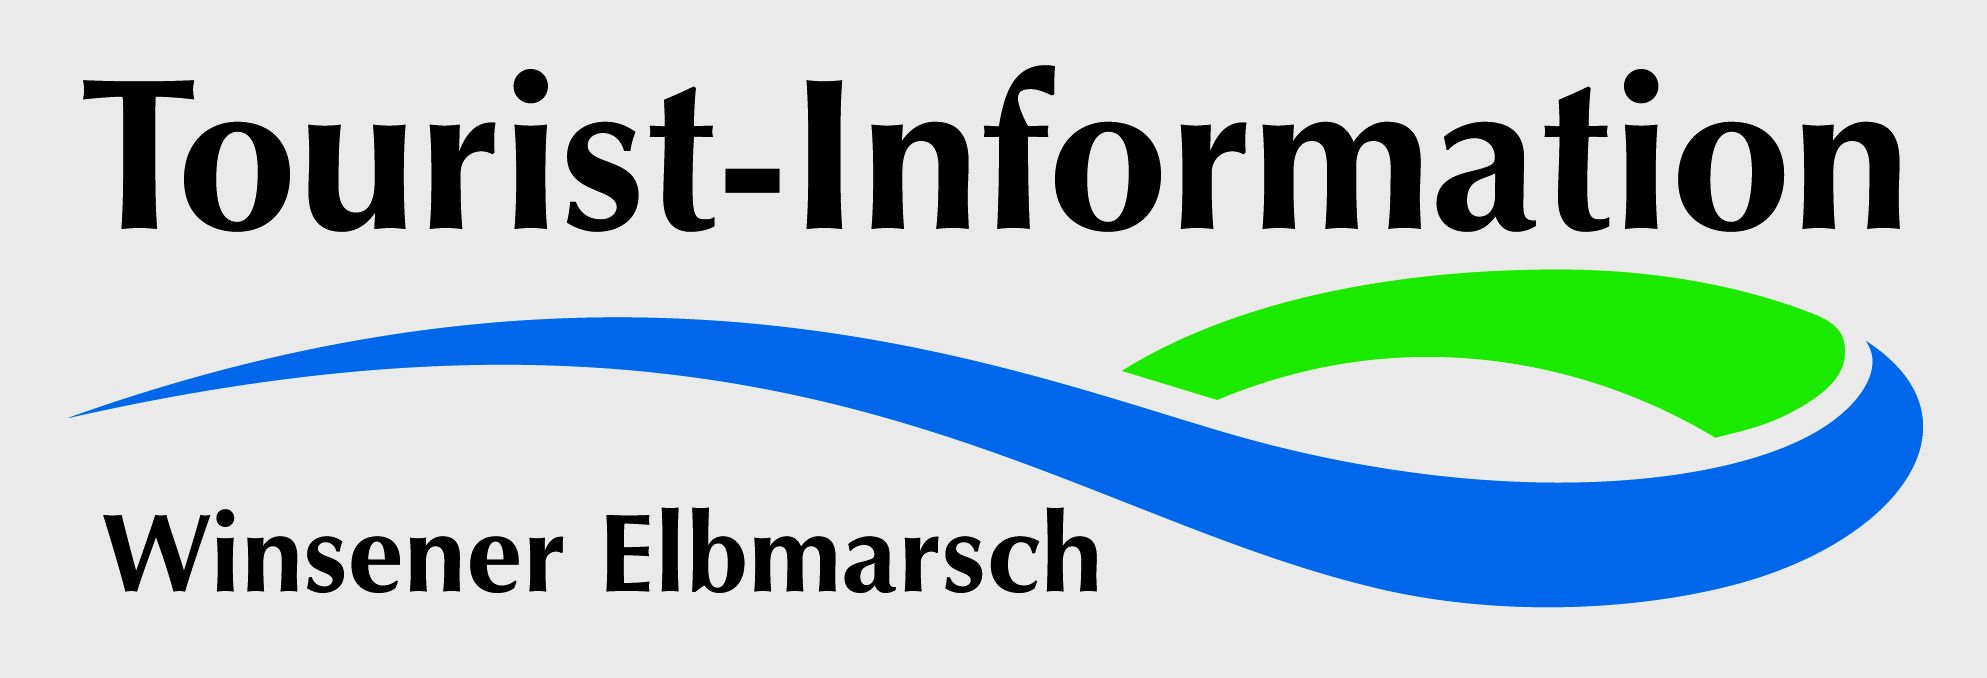 Tourist-Information Winsener Elbmarsch